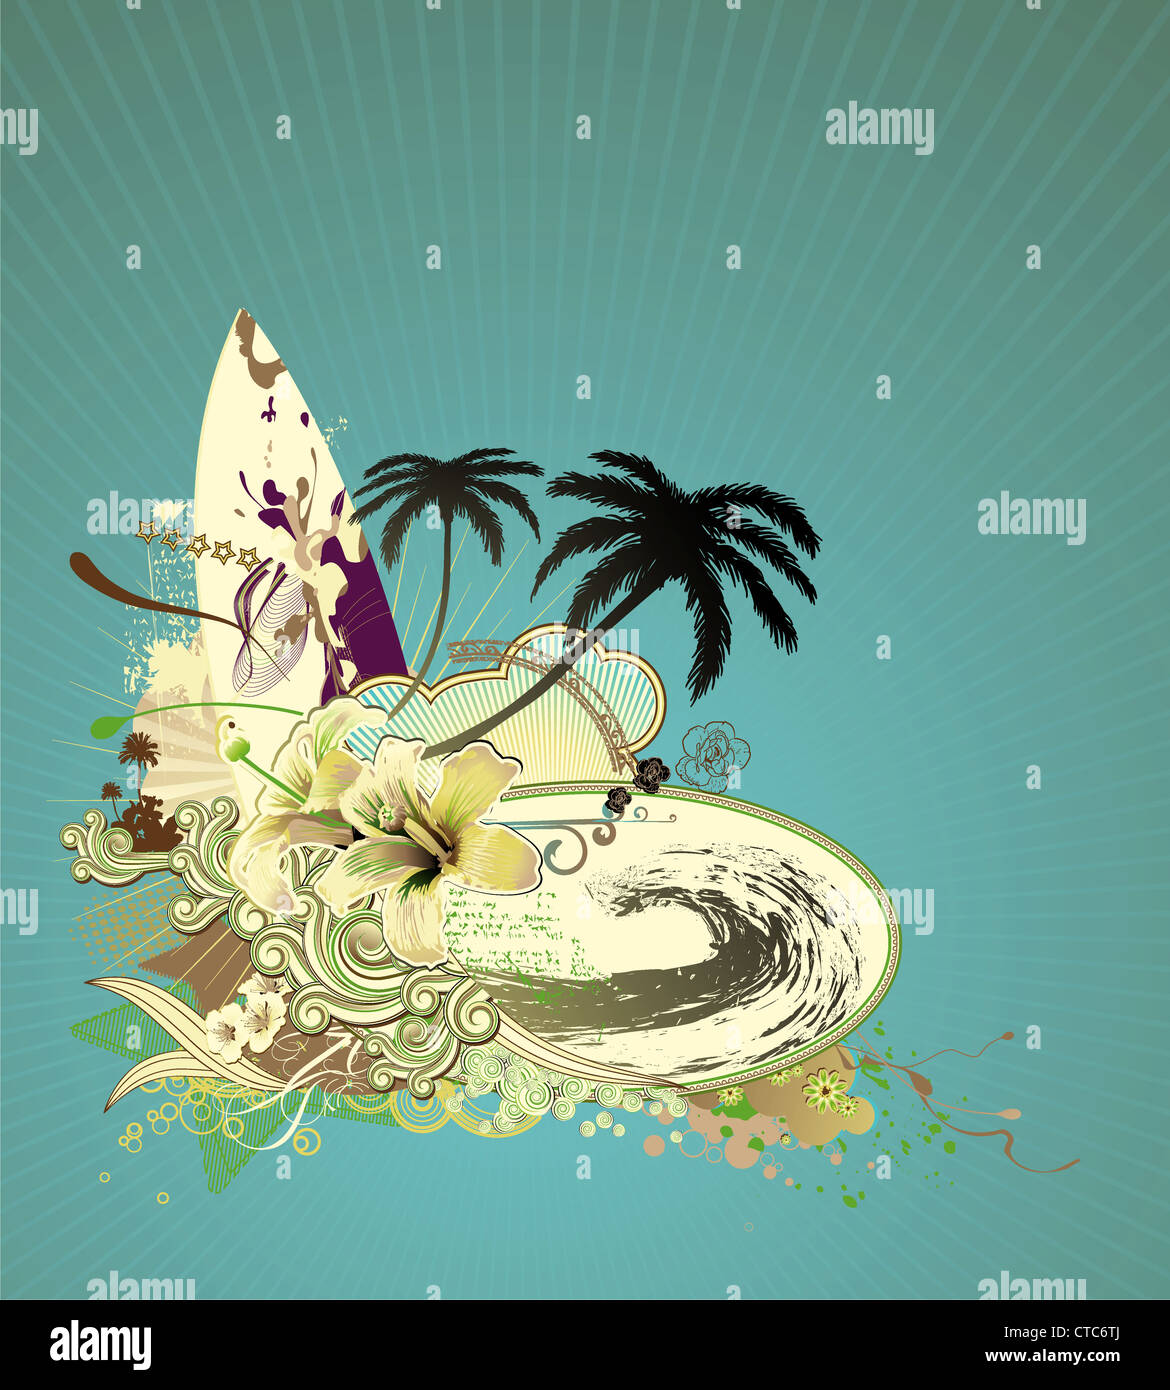 Illustrazione Vettoriale composizione grunge tavola da surf su raggi di sole grande onda hibiscus palme silhouette ricci strisce retrò Foto Stock